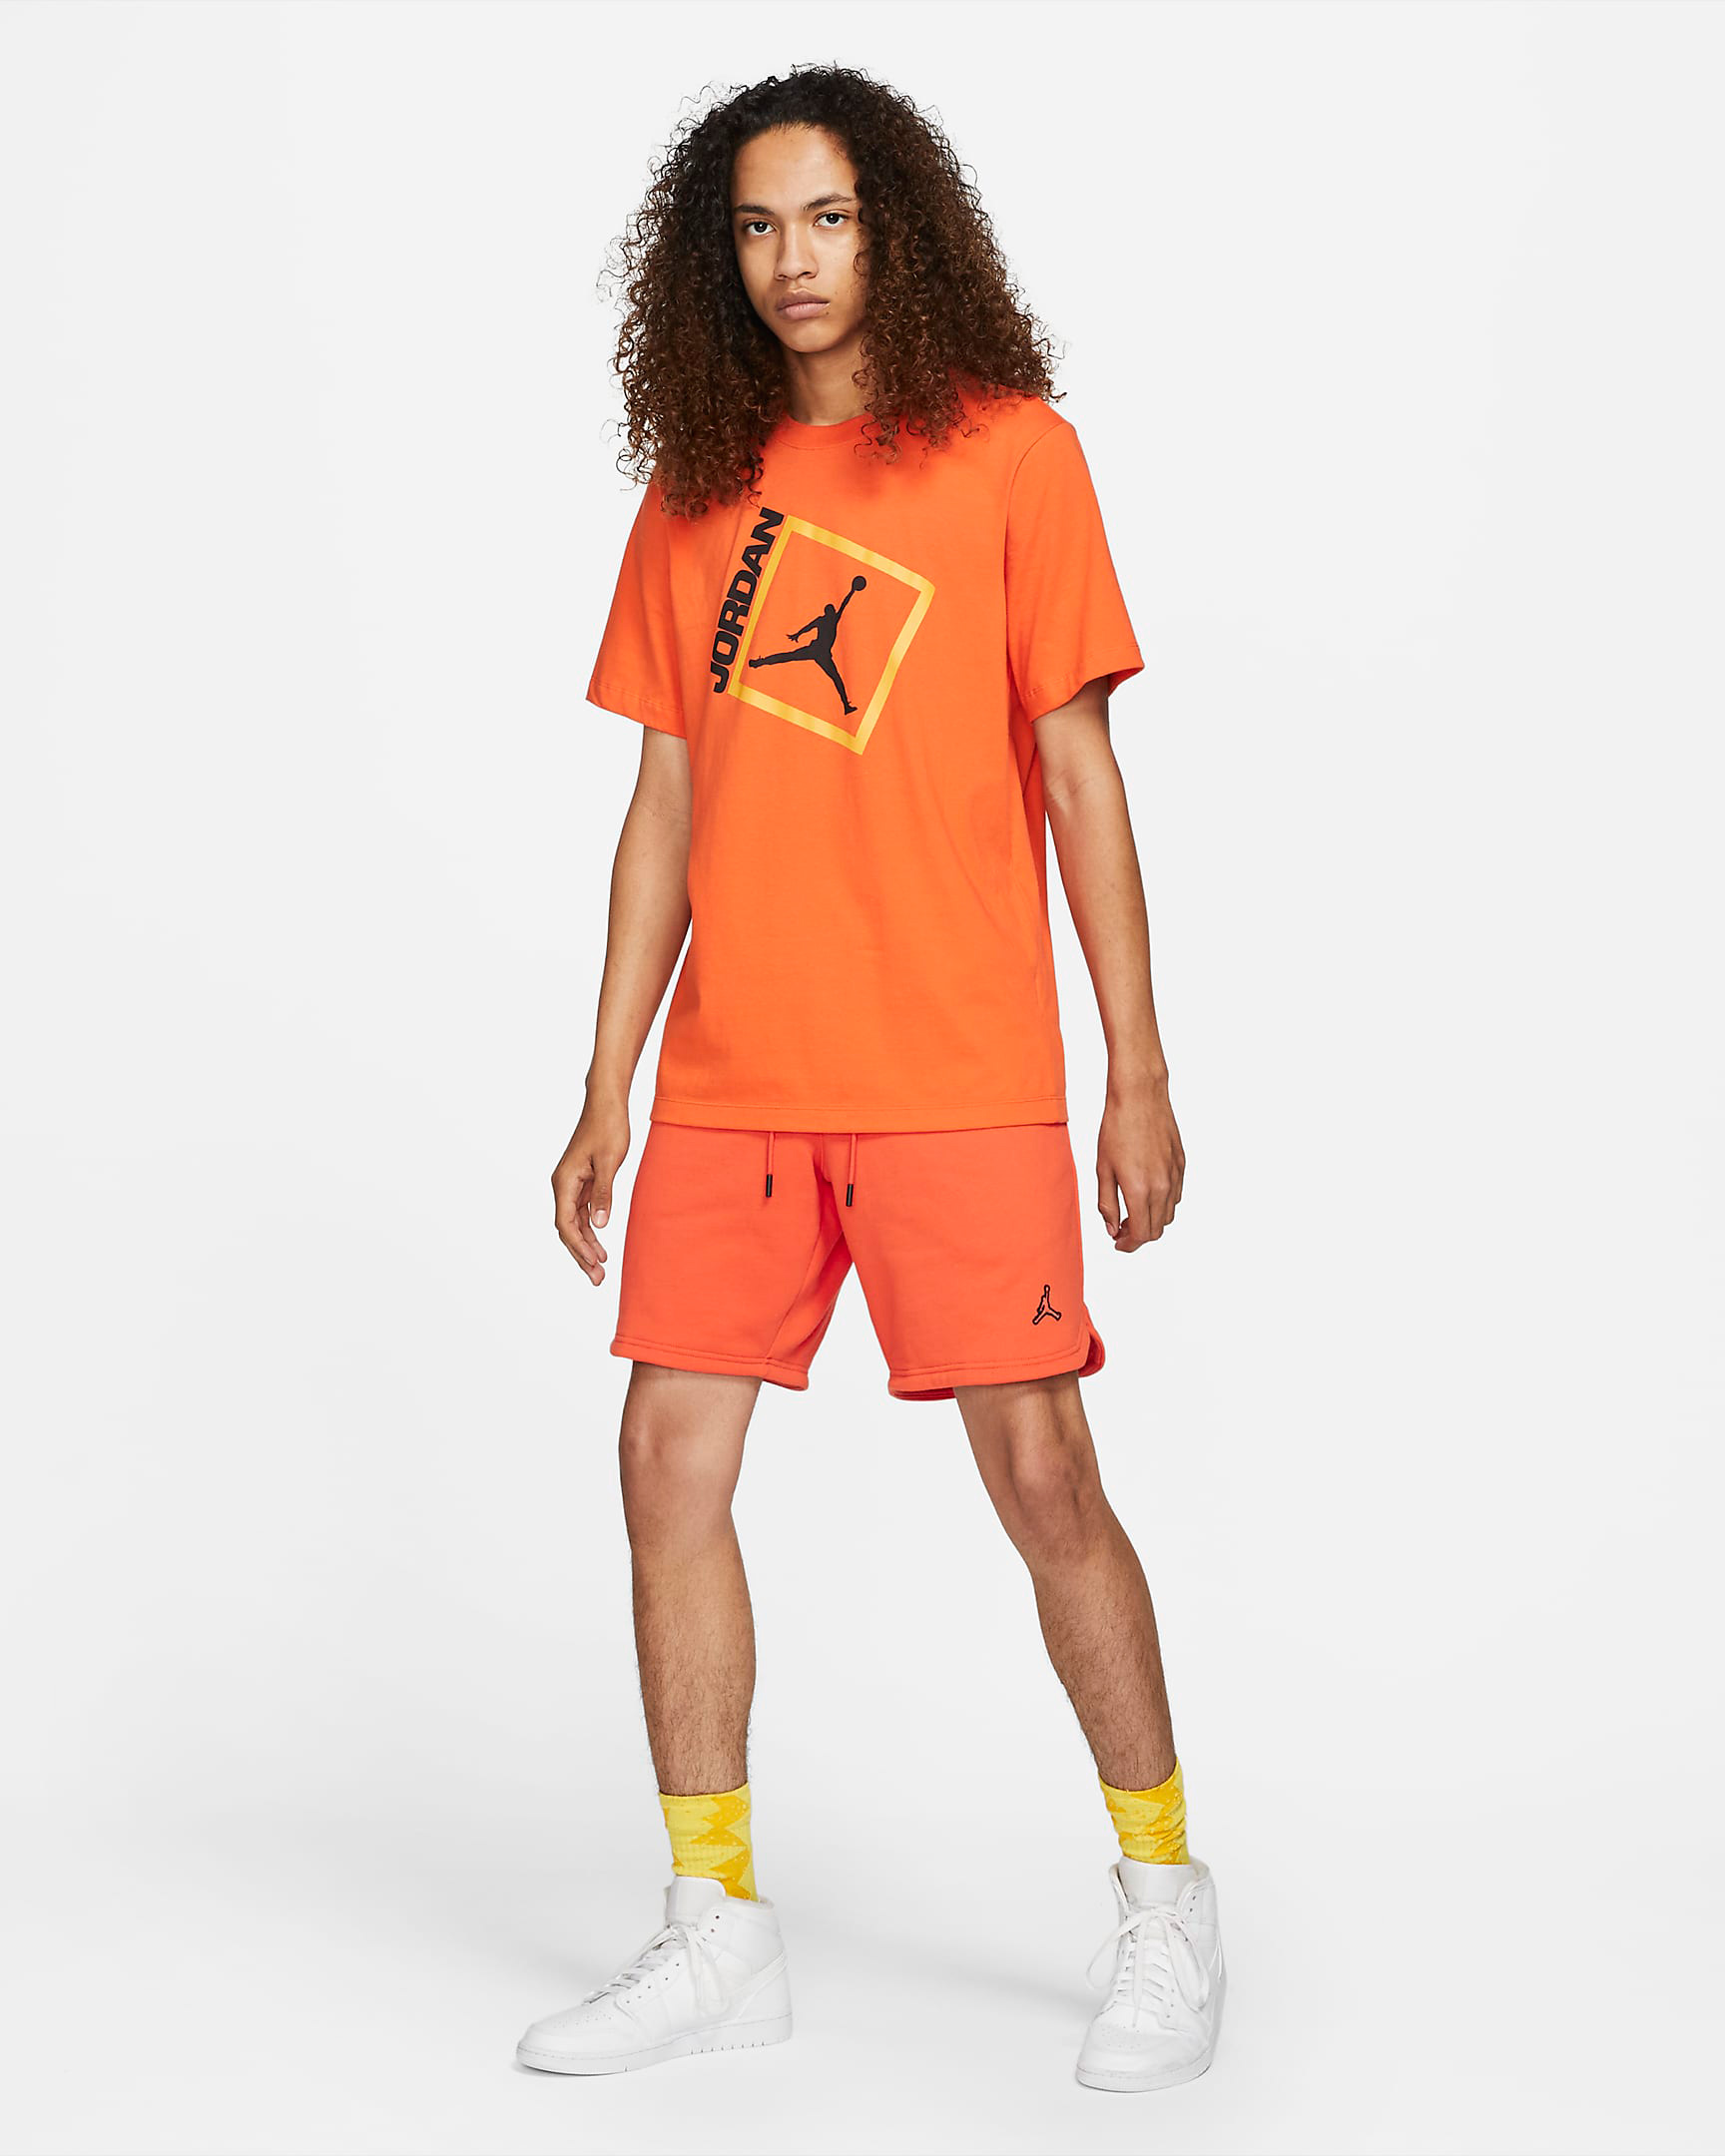 jordan-orange-shirt-shorts-outfit